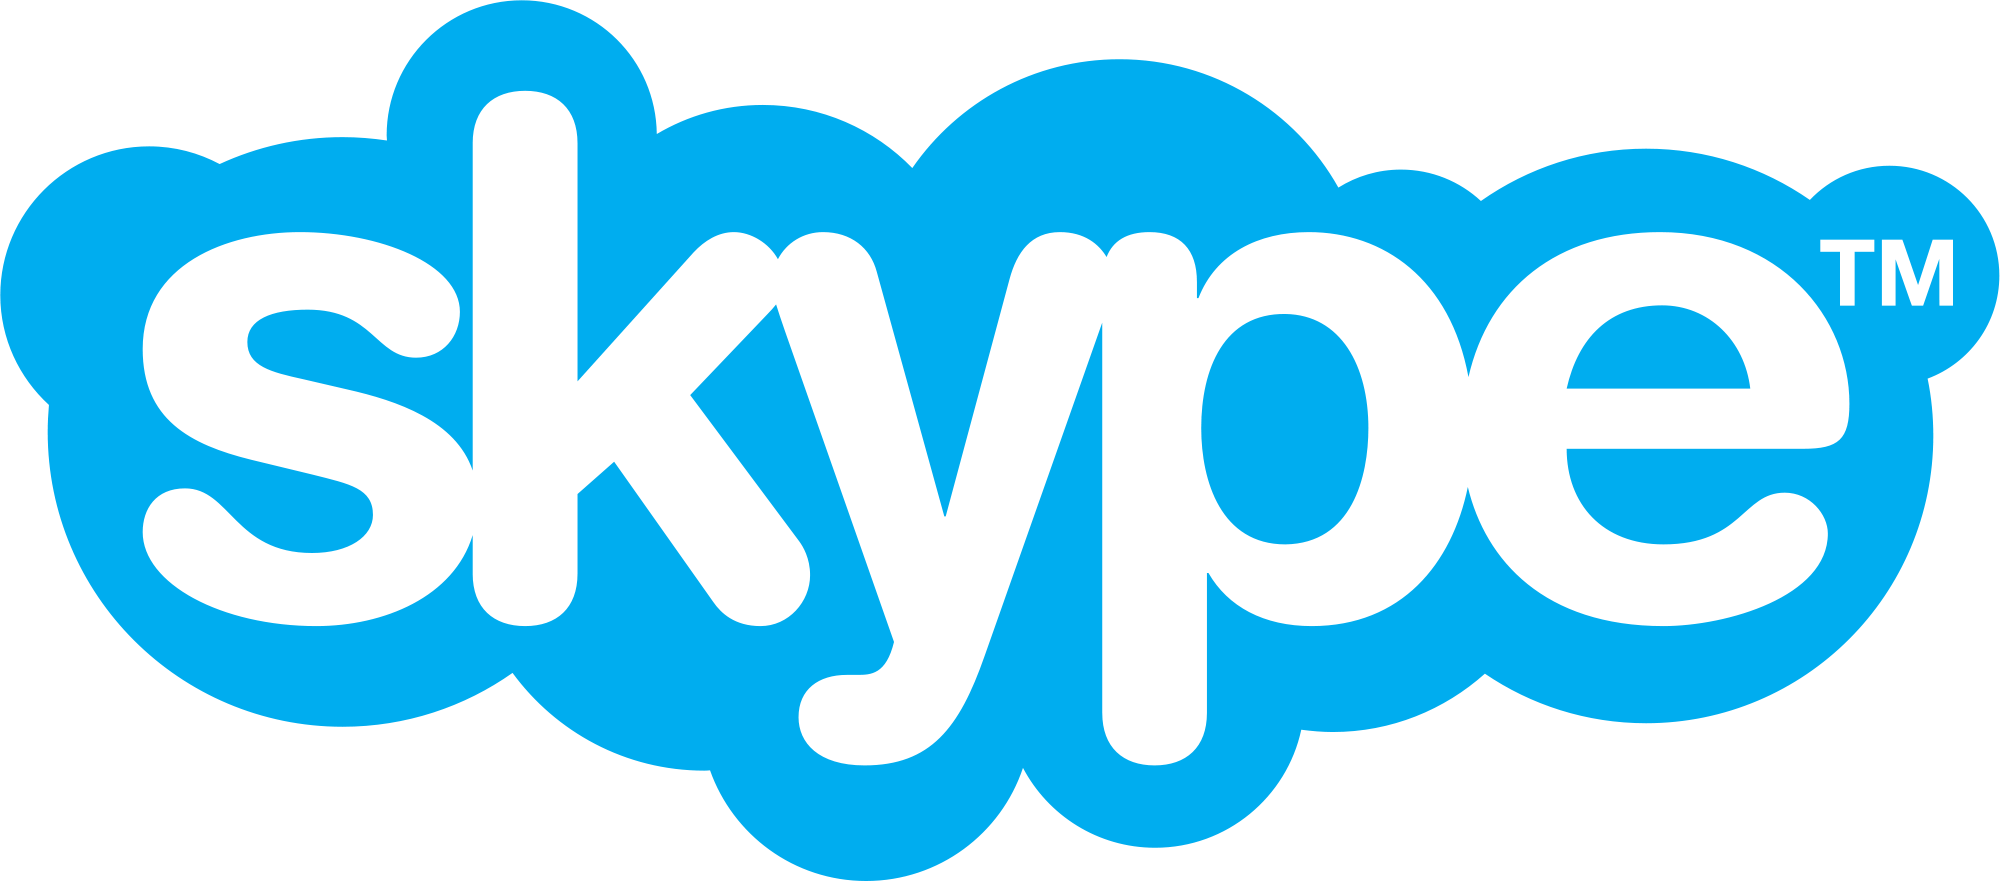 Skype PNG - 16335